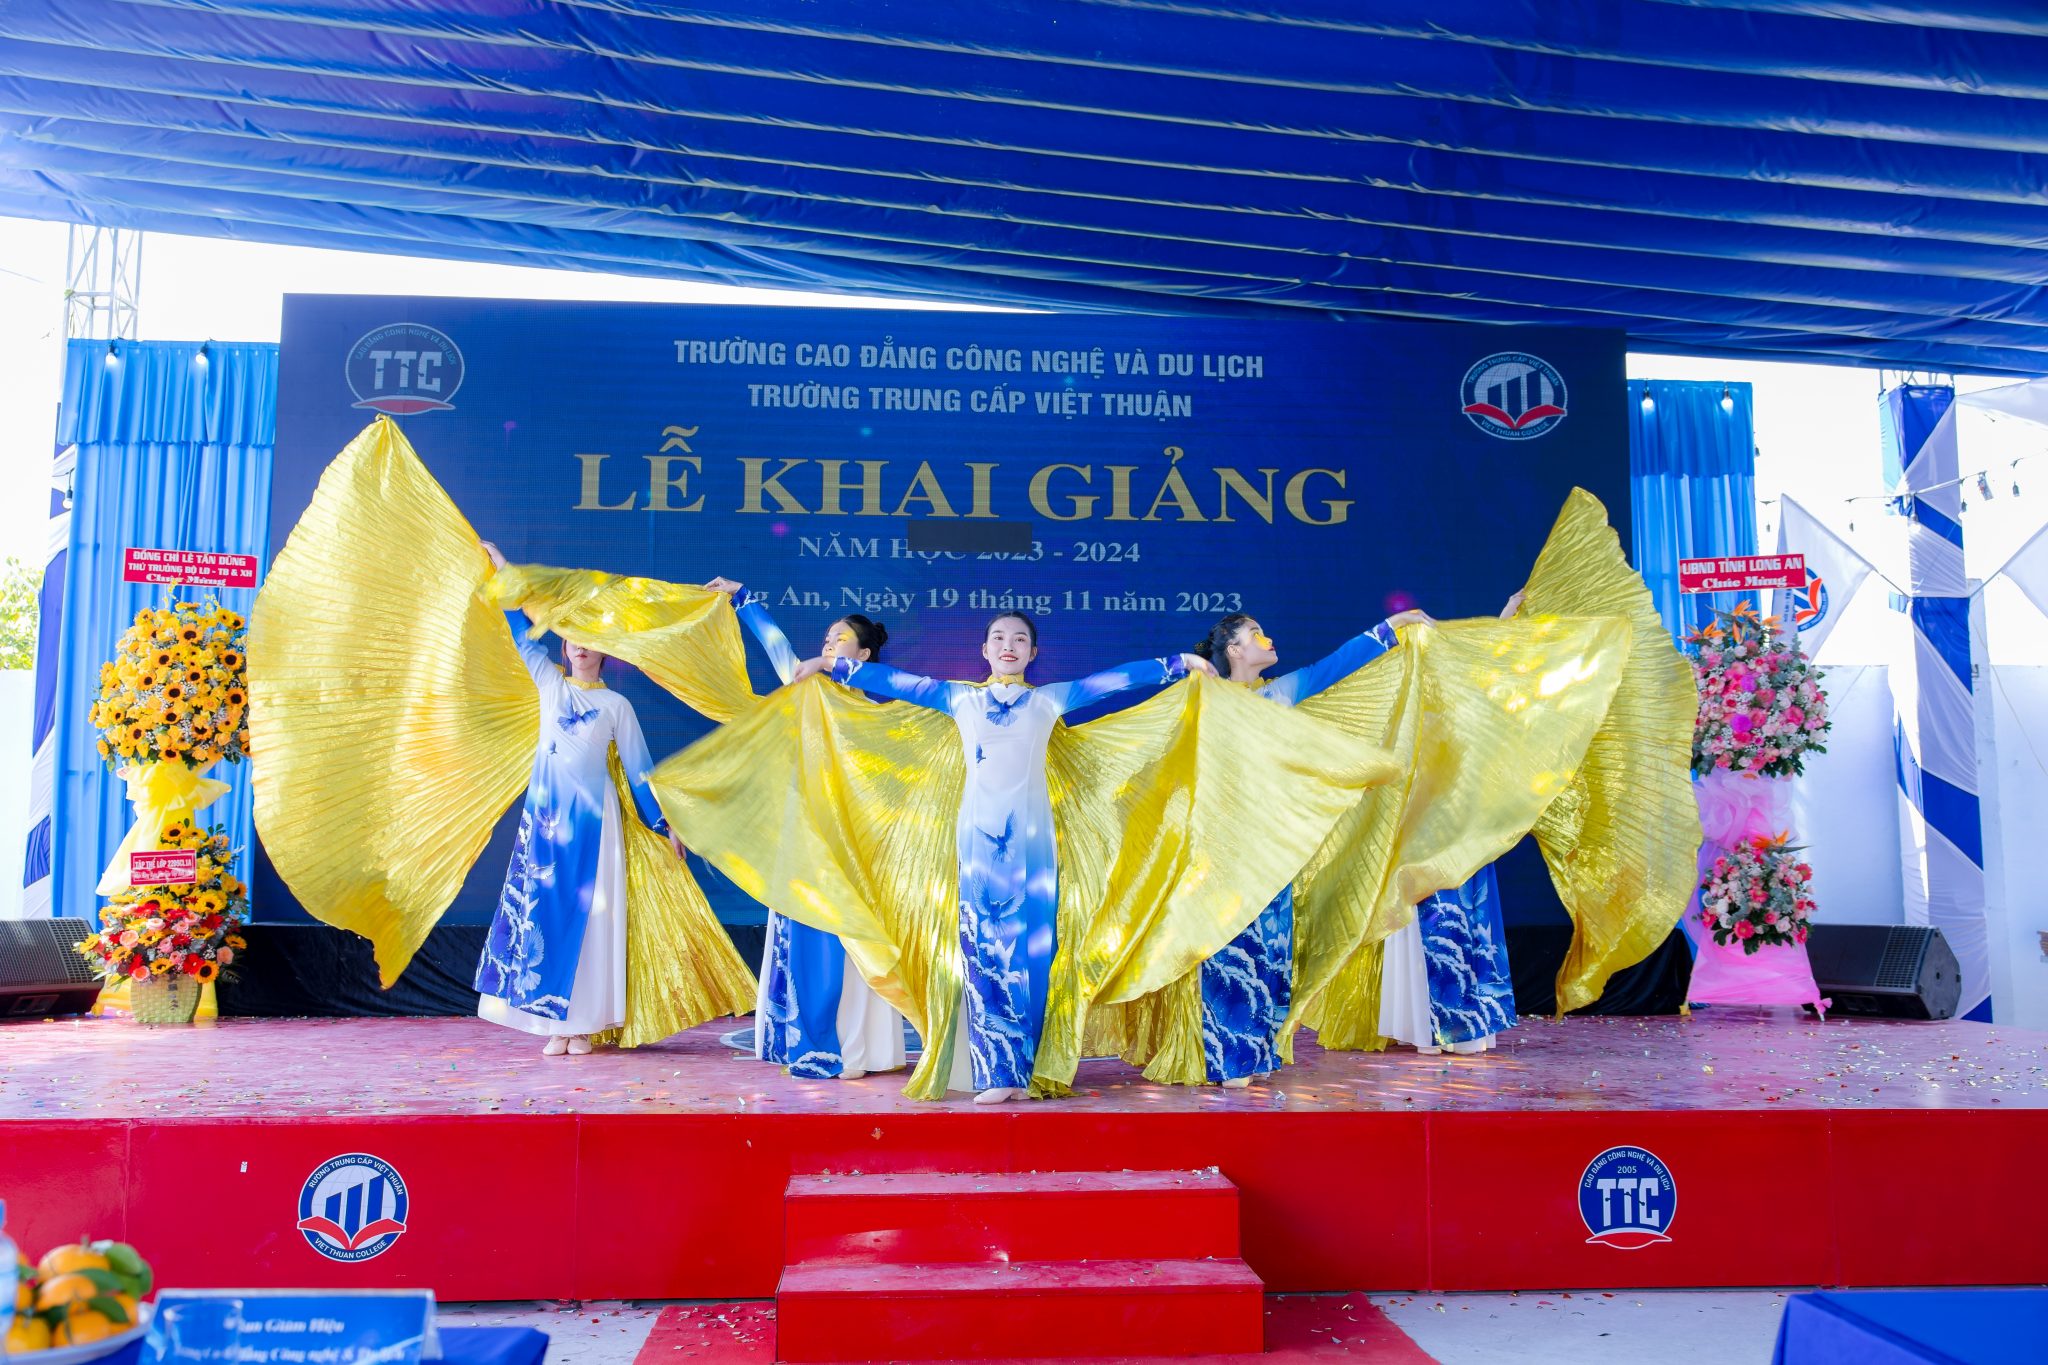 Trường Cao đẳng Công nghệ Và Du lịch và Trường Trung Cấp Việt Thuận khai giảng năm học mới 2023 – 2024